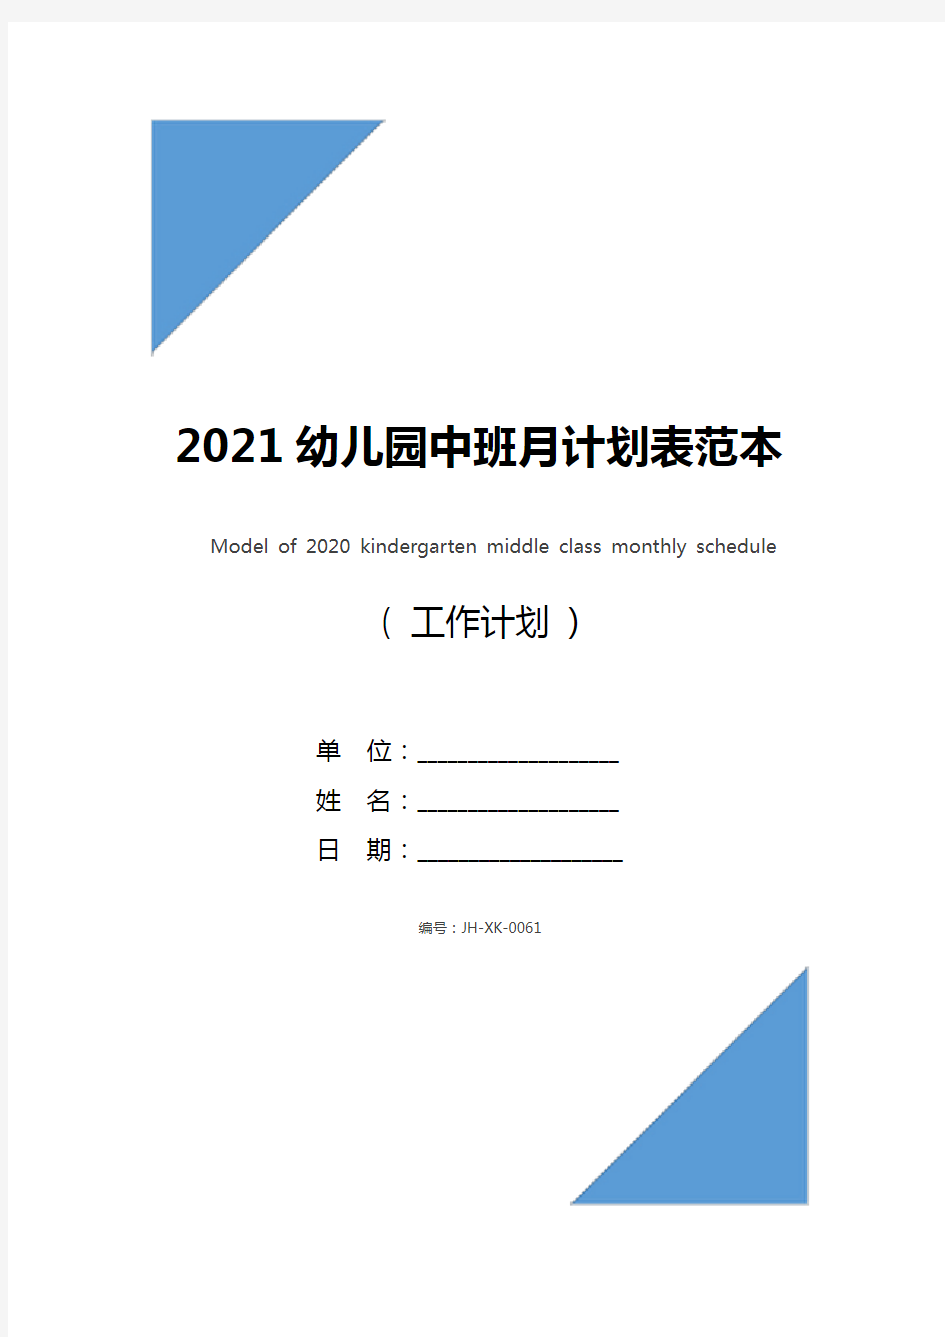 2021幼儿园中班月计划表范本(标准版)